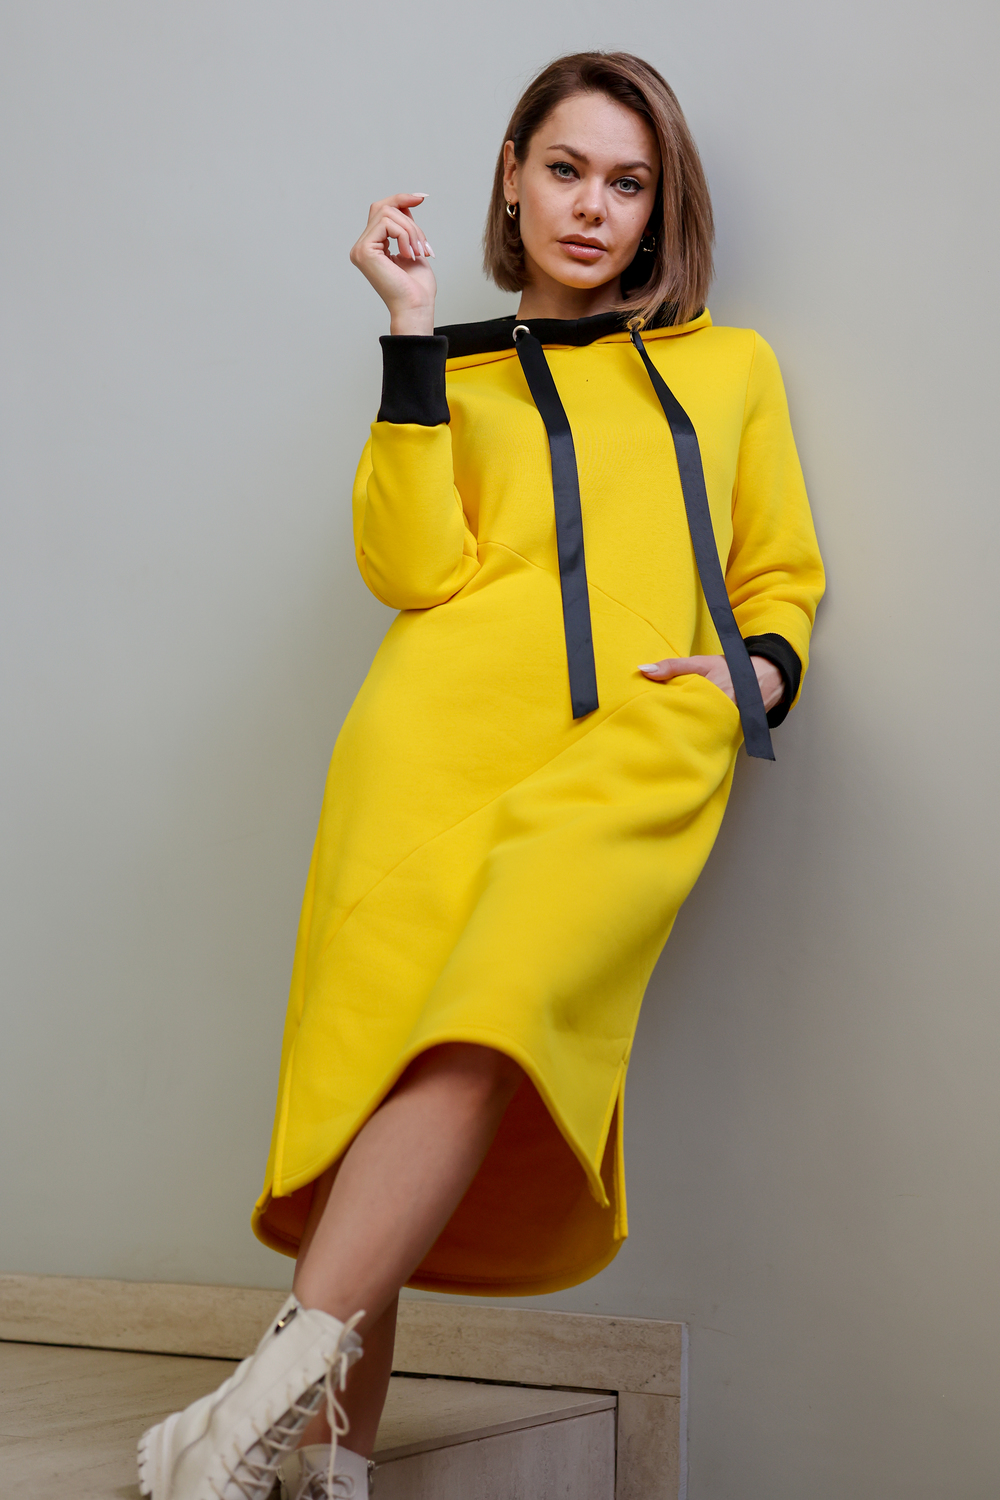 Платье спортивное ТМ000400 желтый купить в интернет-магазине «Весь Трикотаж.RU», г. Иваново